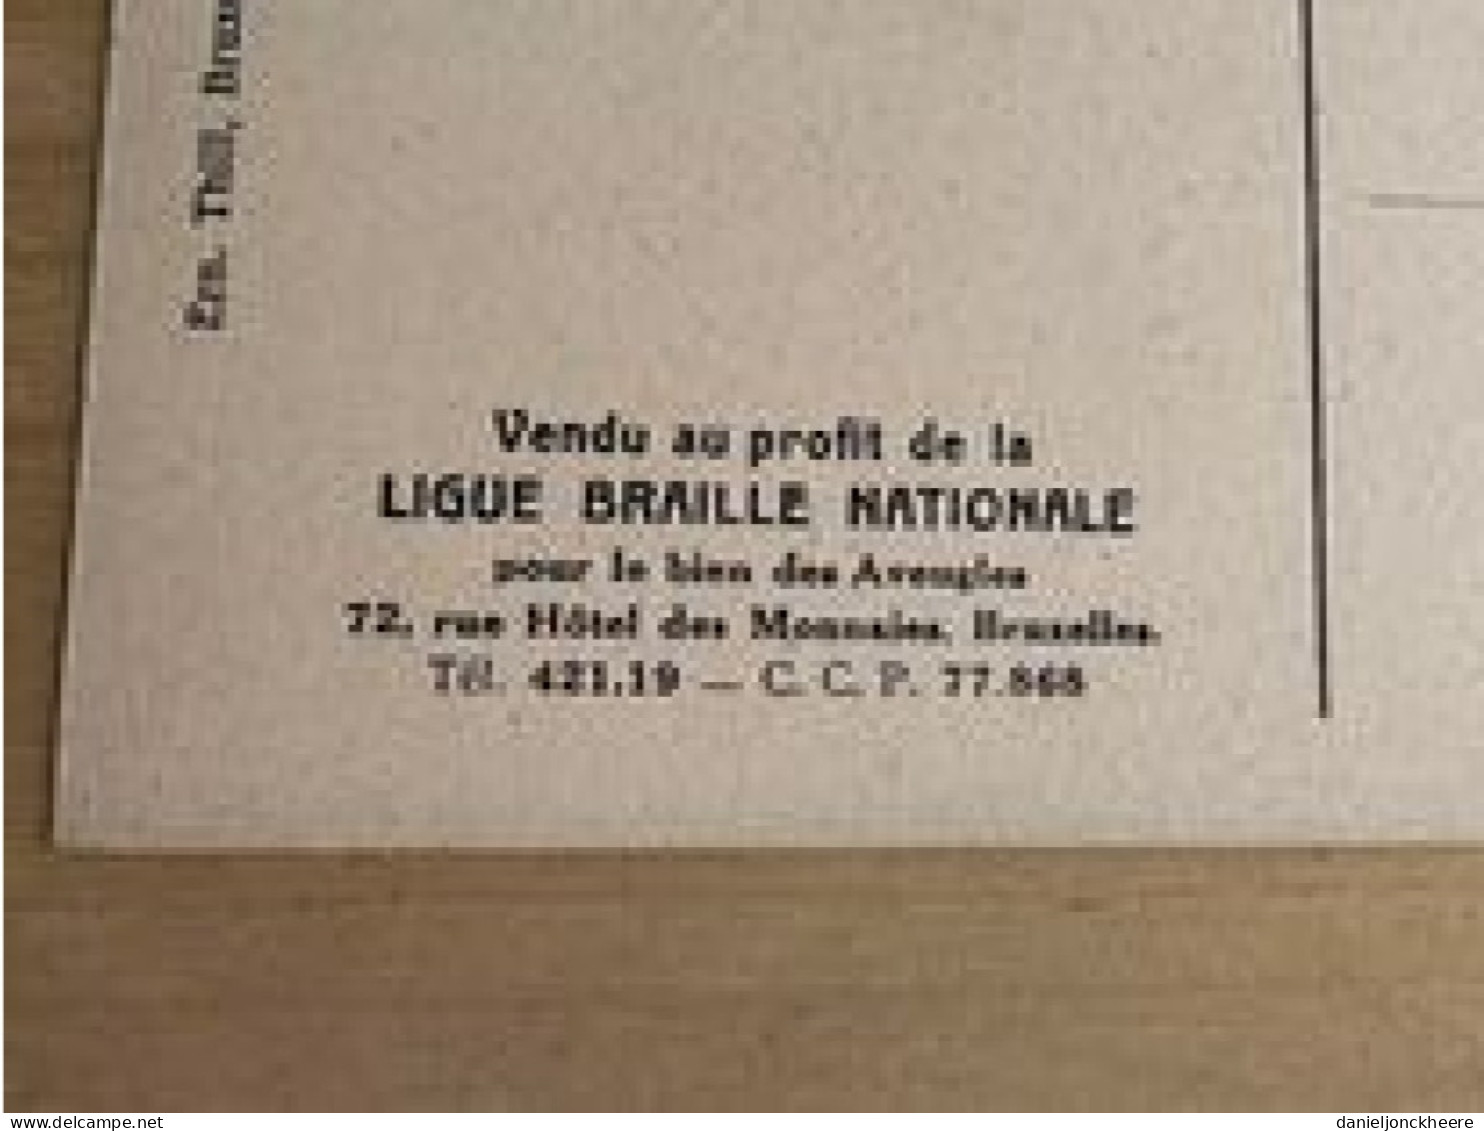 Carte Postale Postkaart Postcard Portrait Du Senateur X Par Cecile Douard Mons 1897 Ligue Braille Nationale - Uomini Politici E Militari